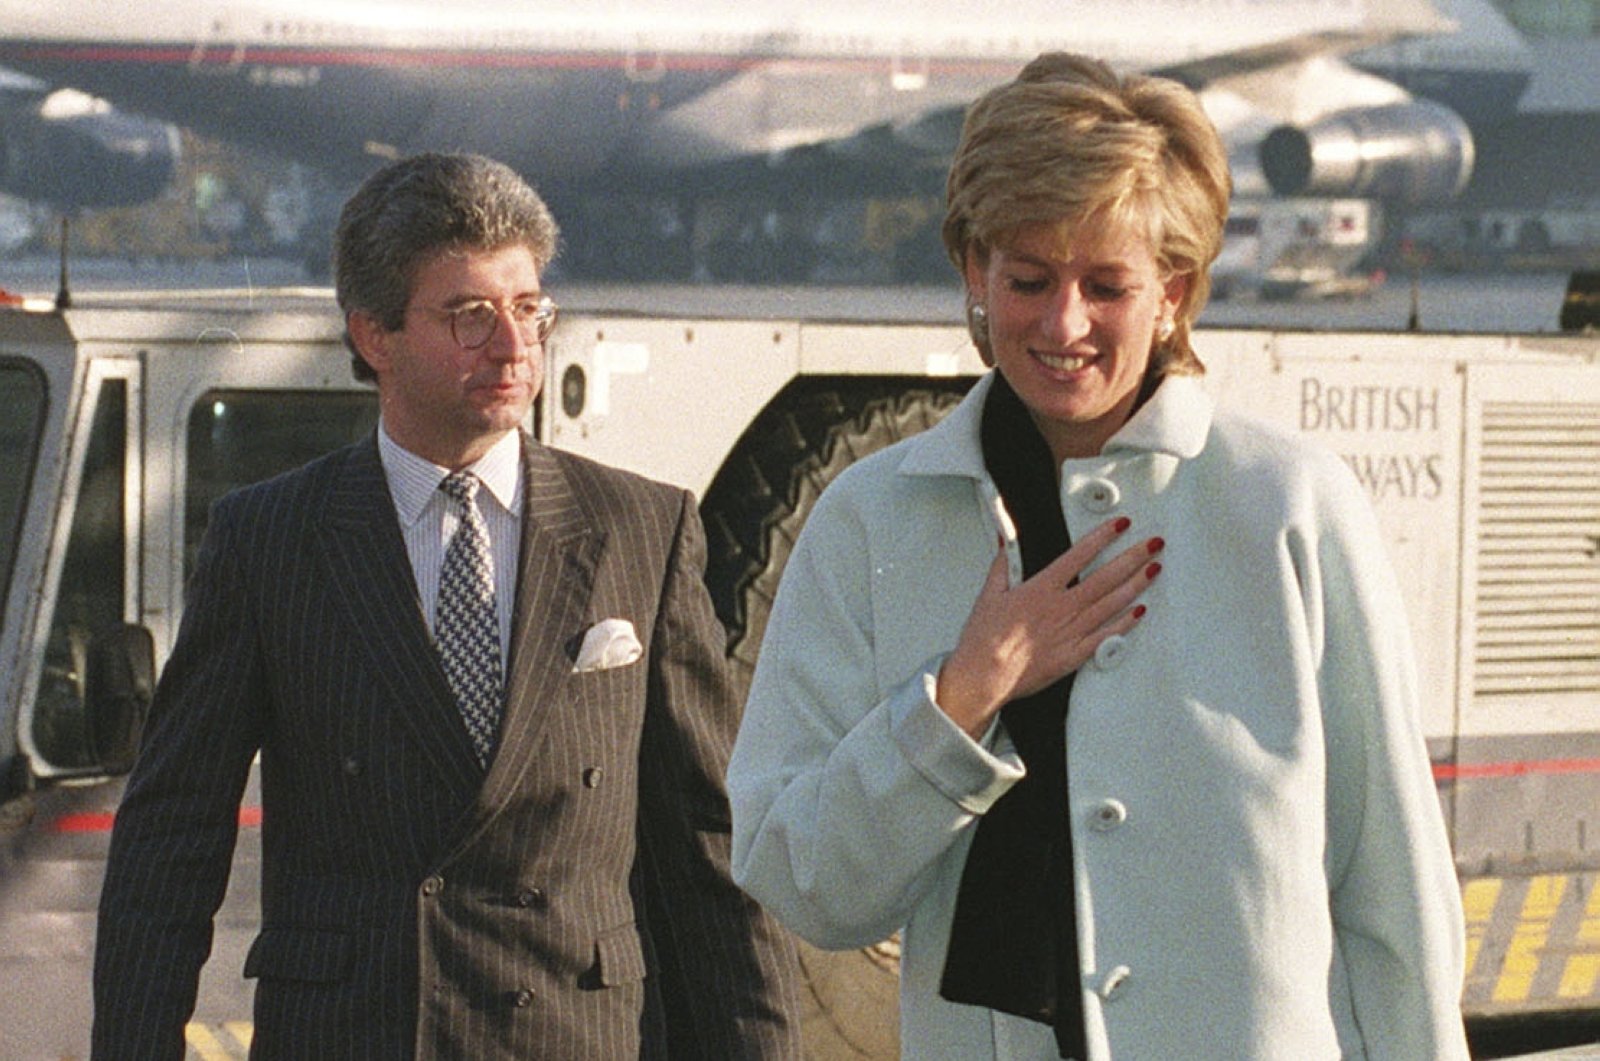 BBC membayar ajudan Putri Diana dalam jumlah ‘substansial’ atas taktik licik